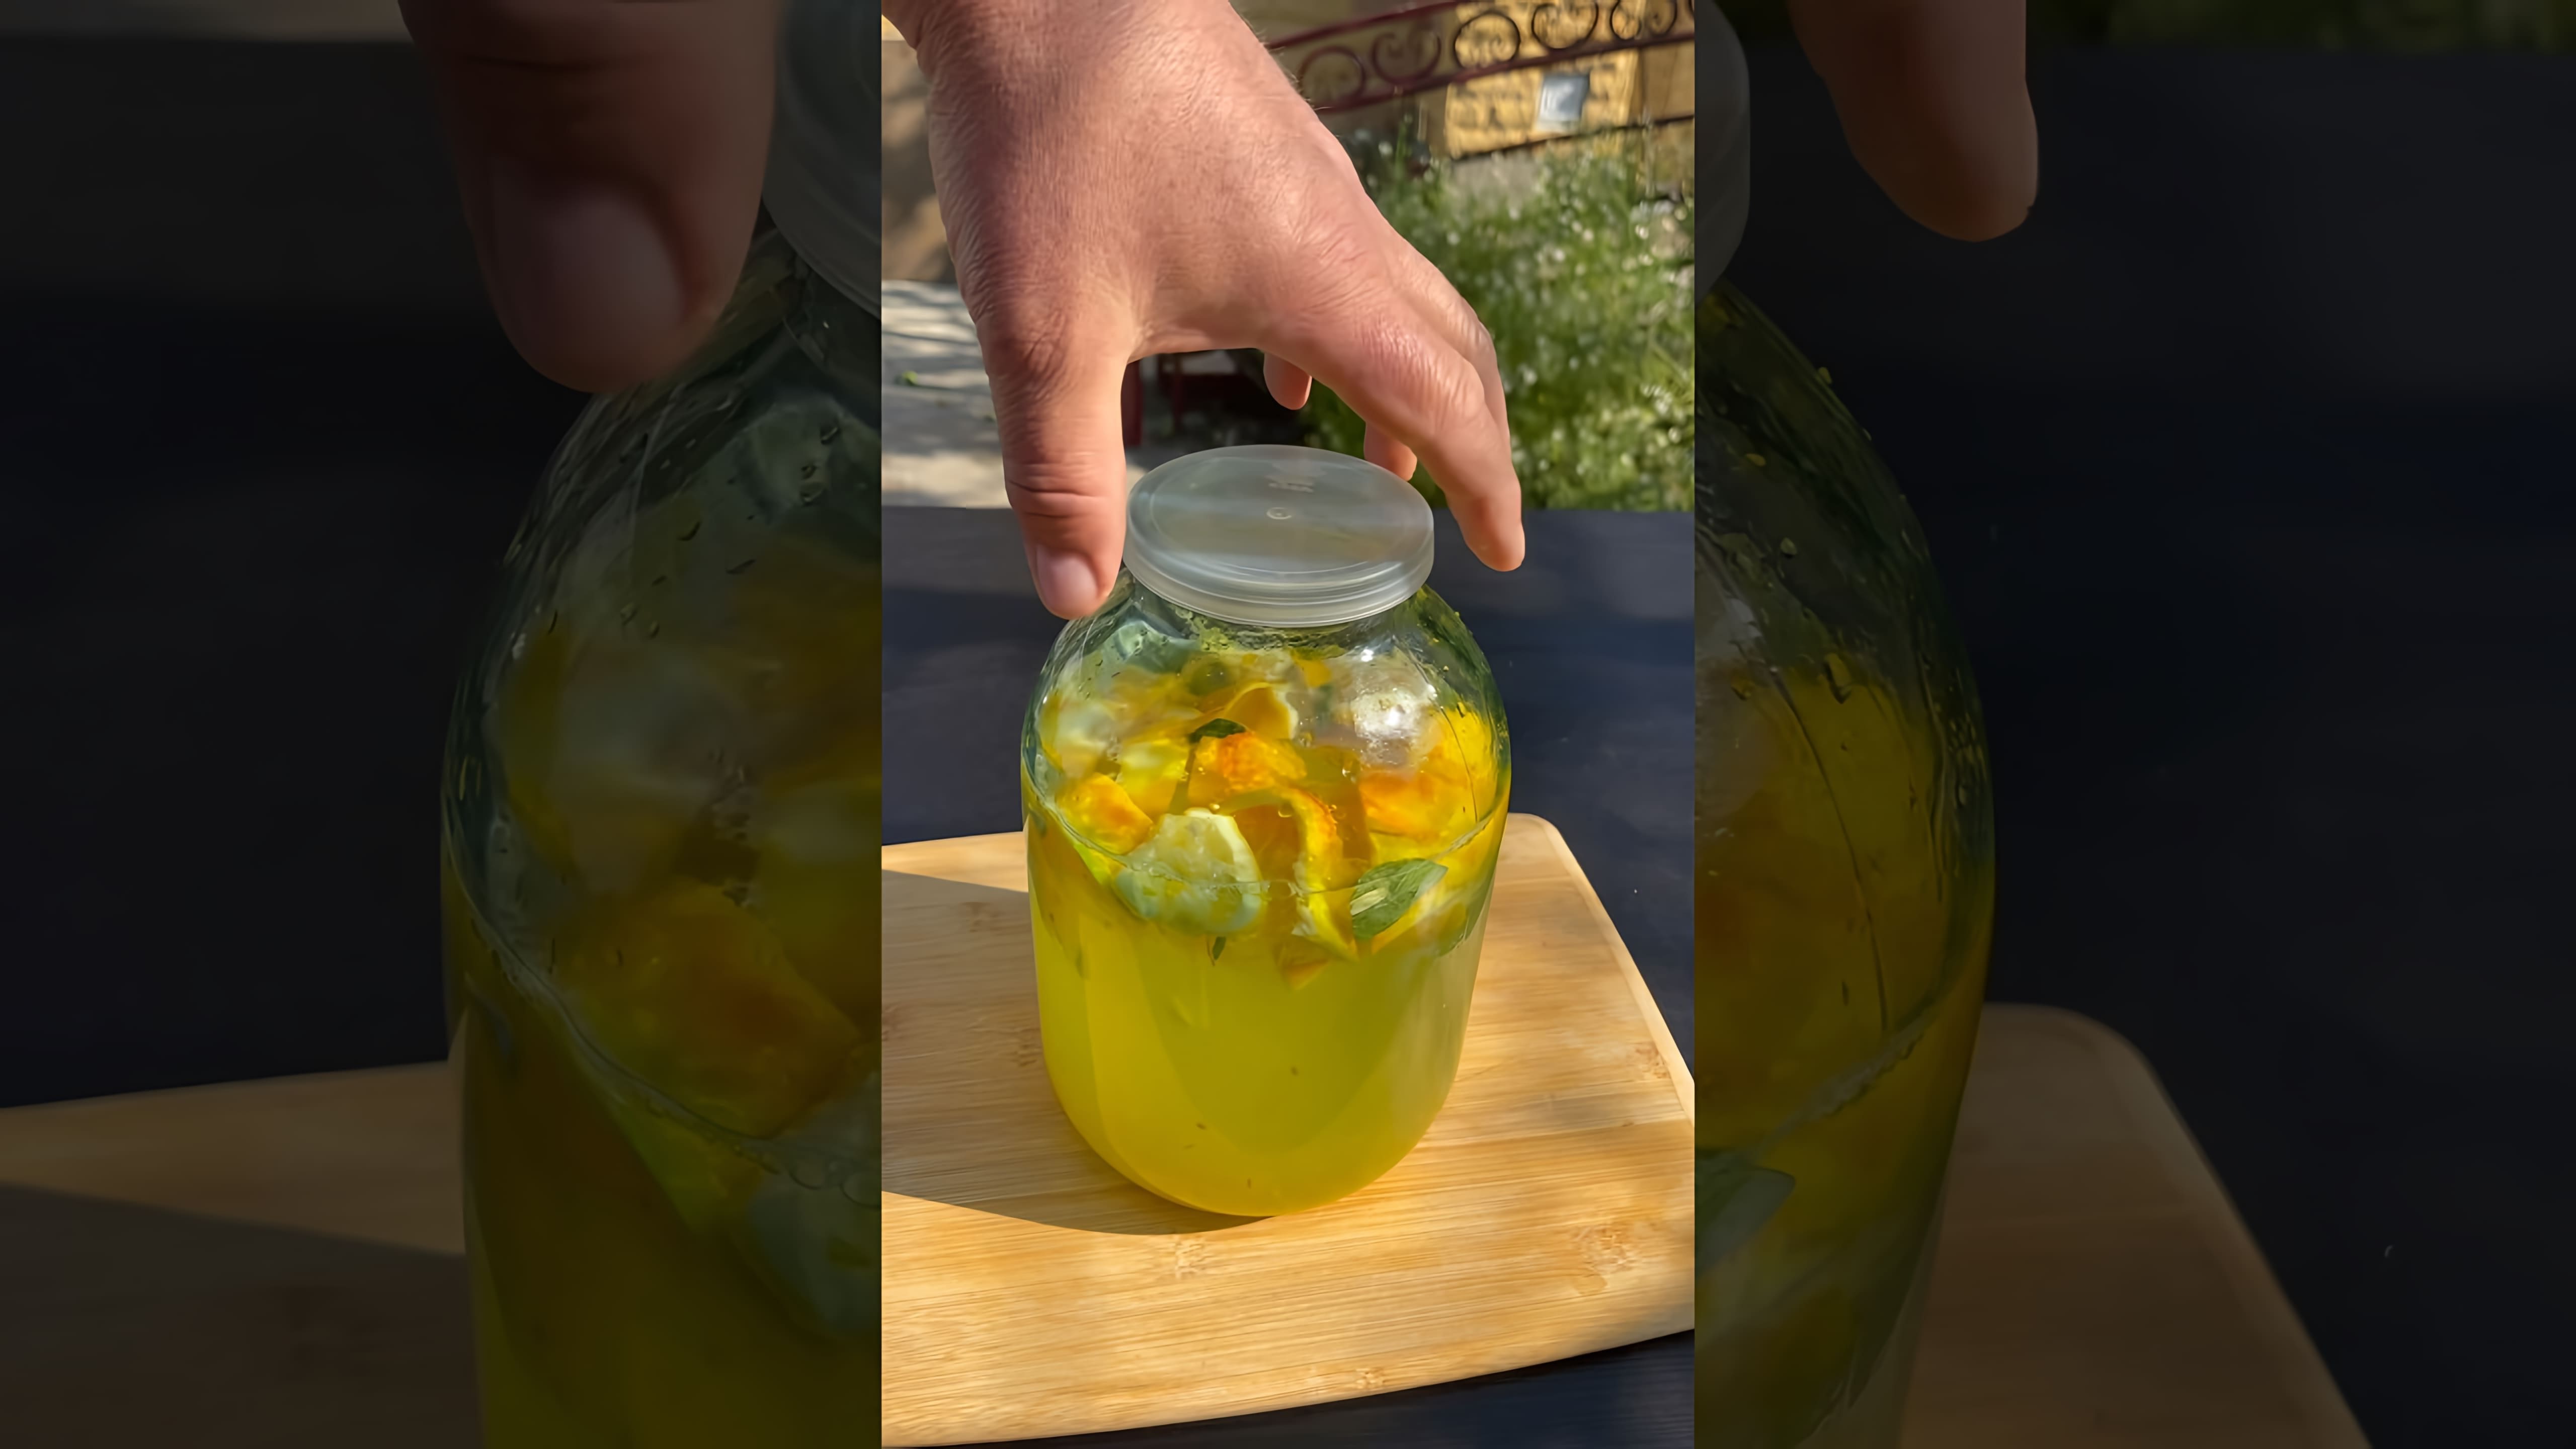 В этом видео демонстрируется процесс приготовления лимонада по-турецки